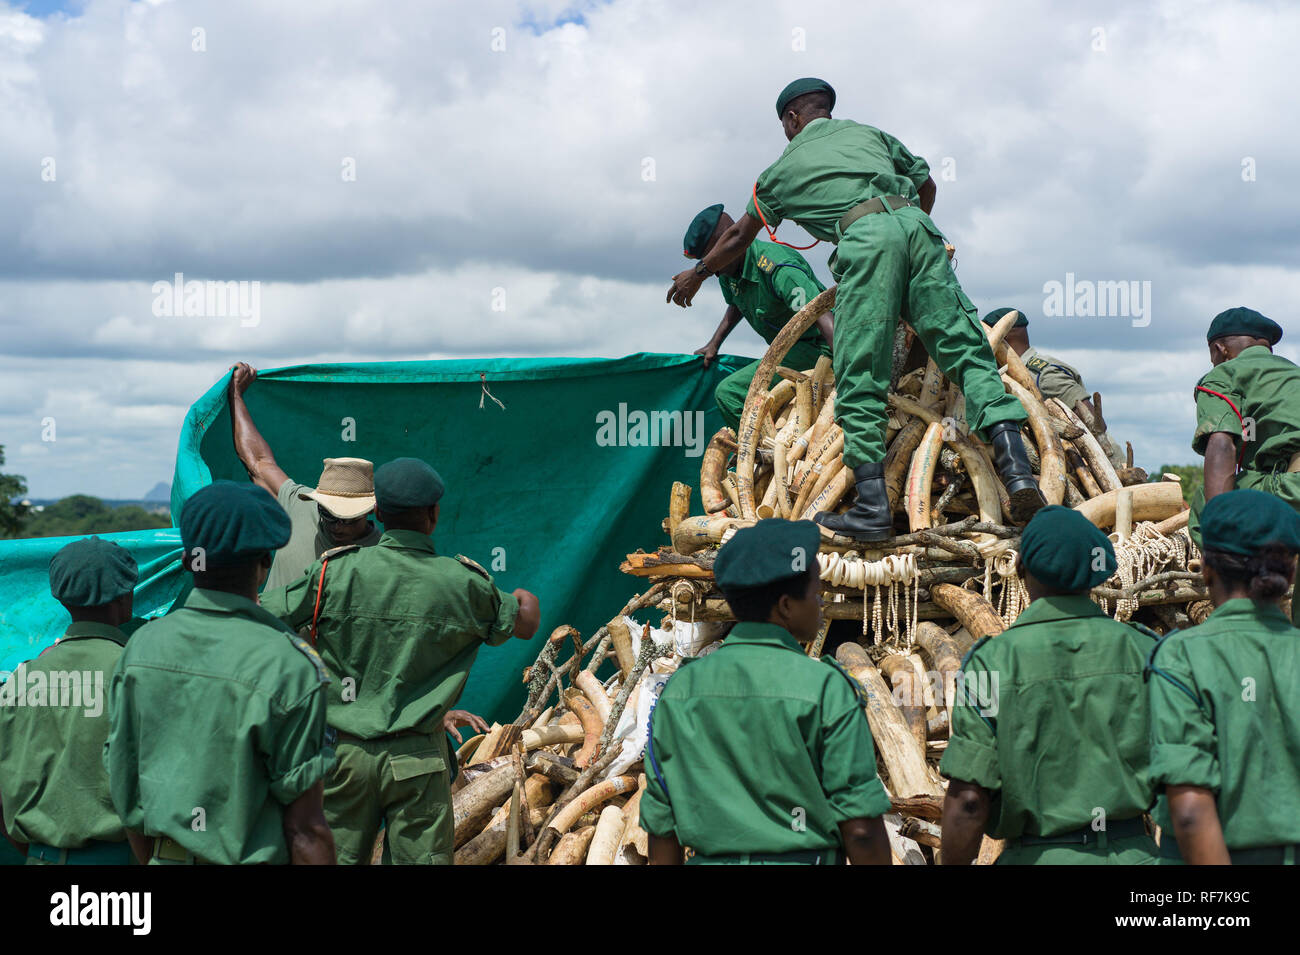 Förster von Malawis Abteilung der Nationalen Parks und Wildlife Rush ein Haufen beschlagnahmt elephant Ivory zu decken nach in Lilongwe Brennvorgang abgebrochen wurde Stockfoto